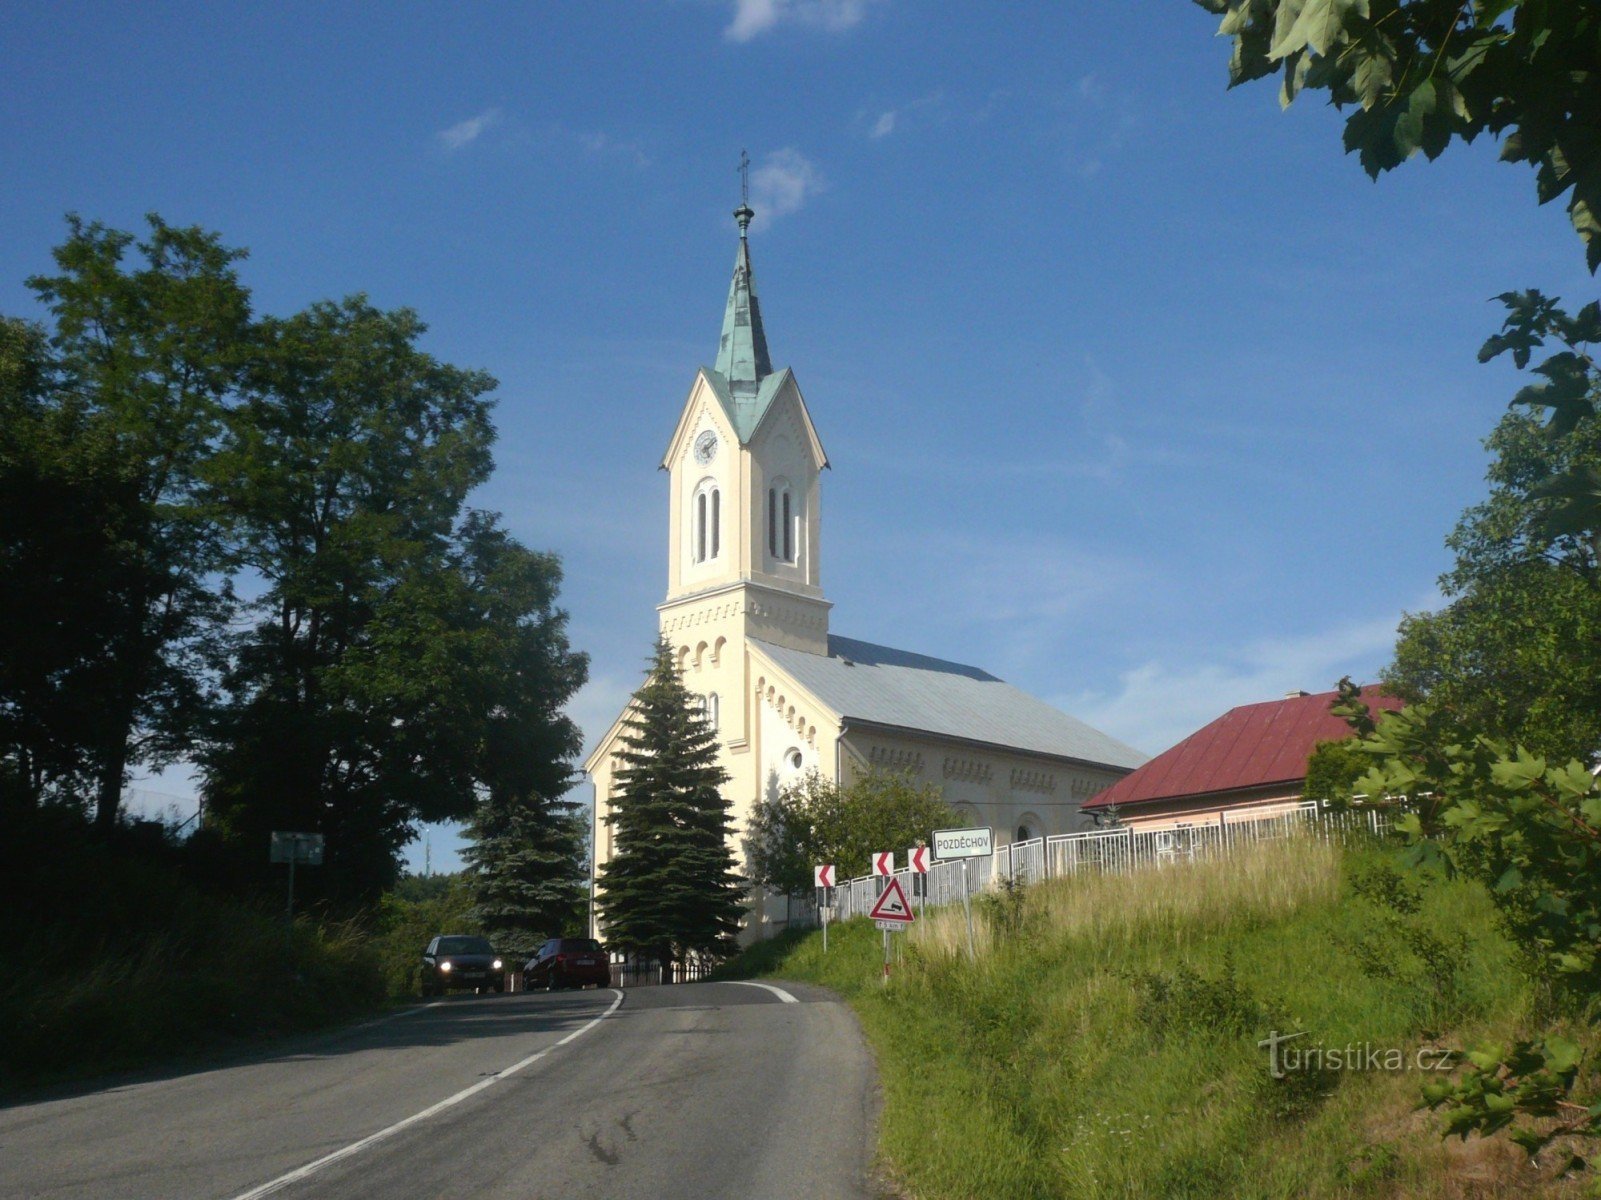 Pozděchov - église évangélique